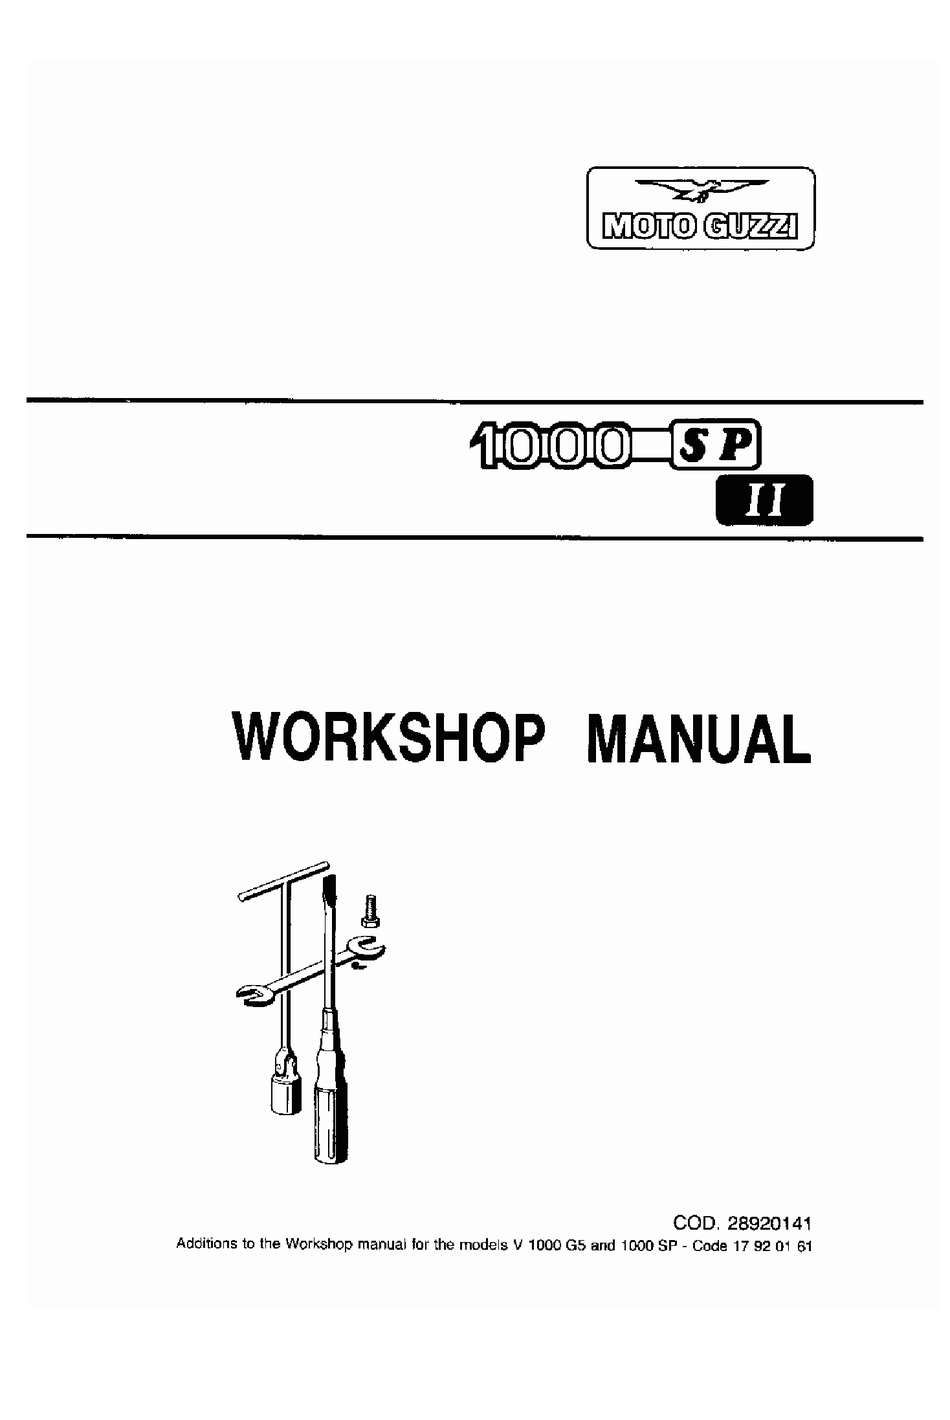 Moto Guzzi Handbuch Werkstatthandbuch Reparaturanleitung V 1000 G5 1000 SP neu 